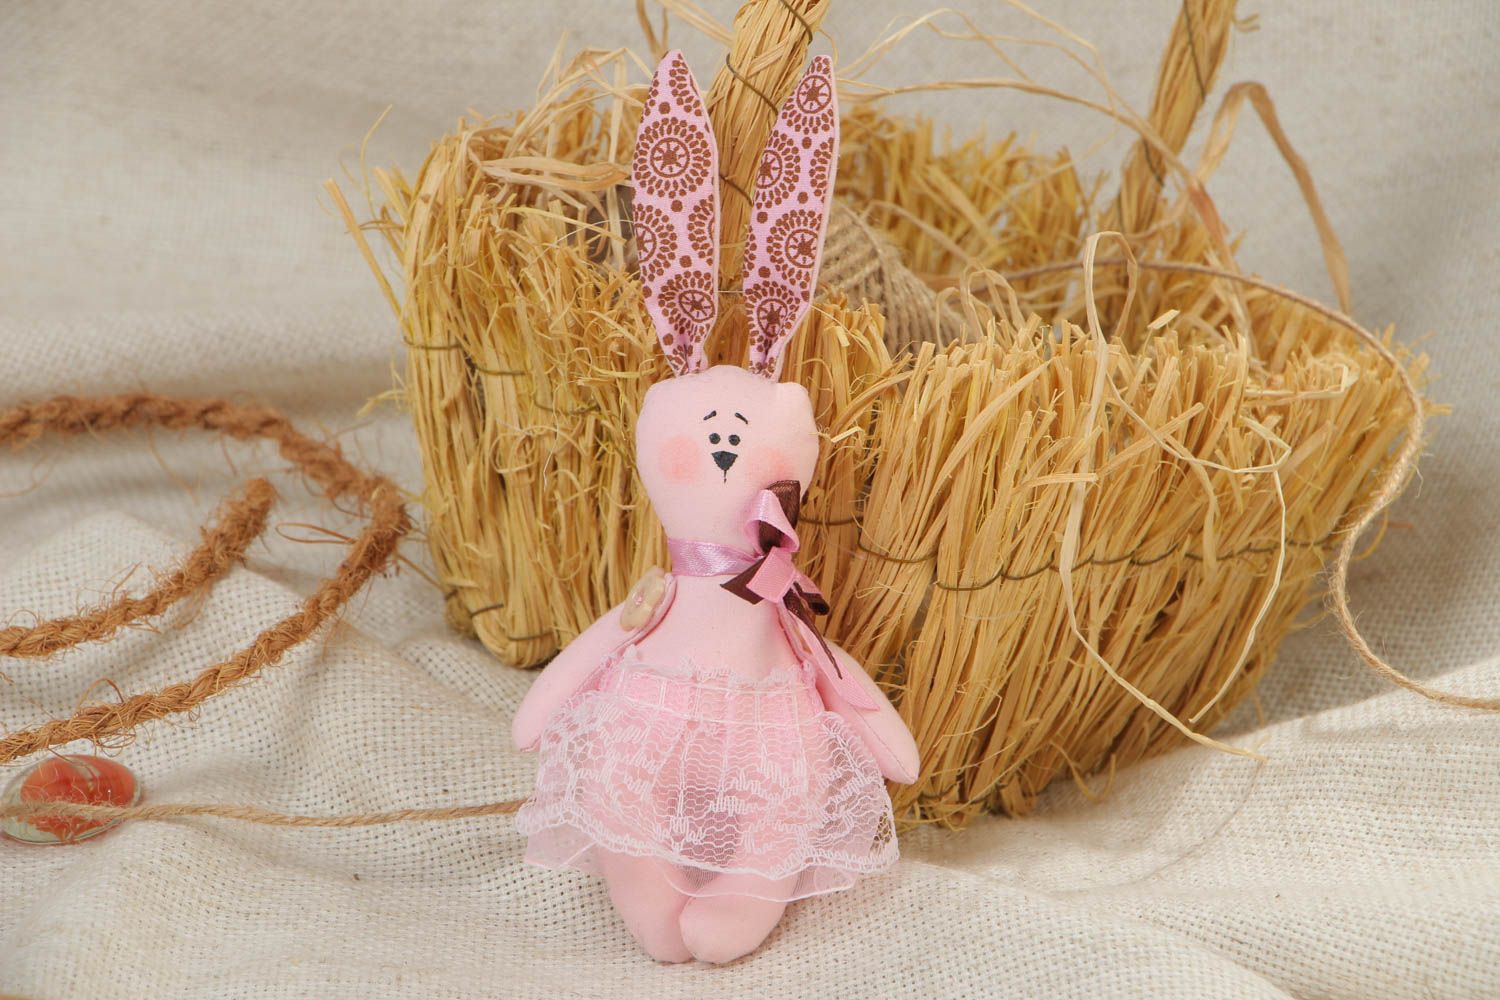 Мягкая игрушка из ткани розовая зайка ручной работы для дома и детей милая  фото 1